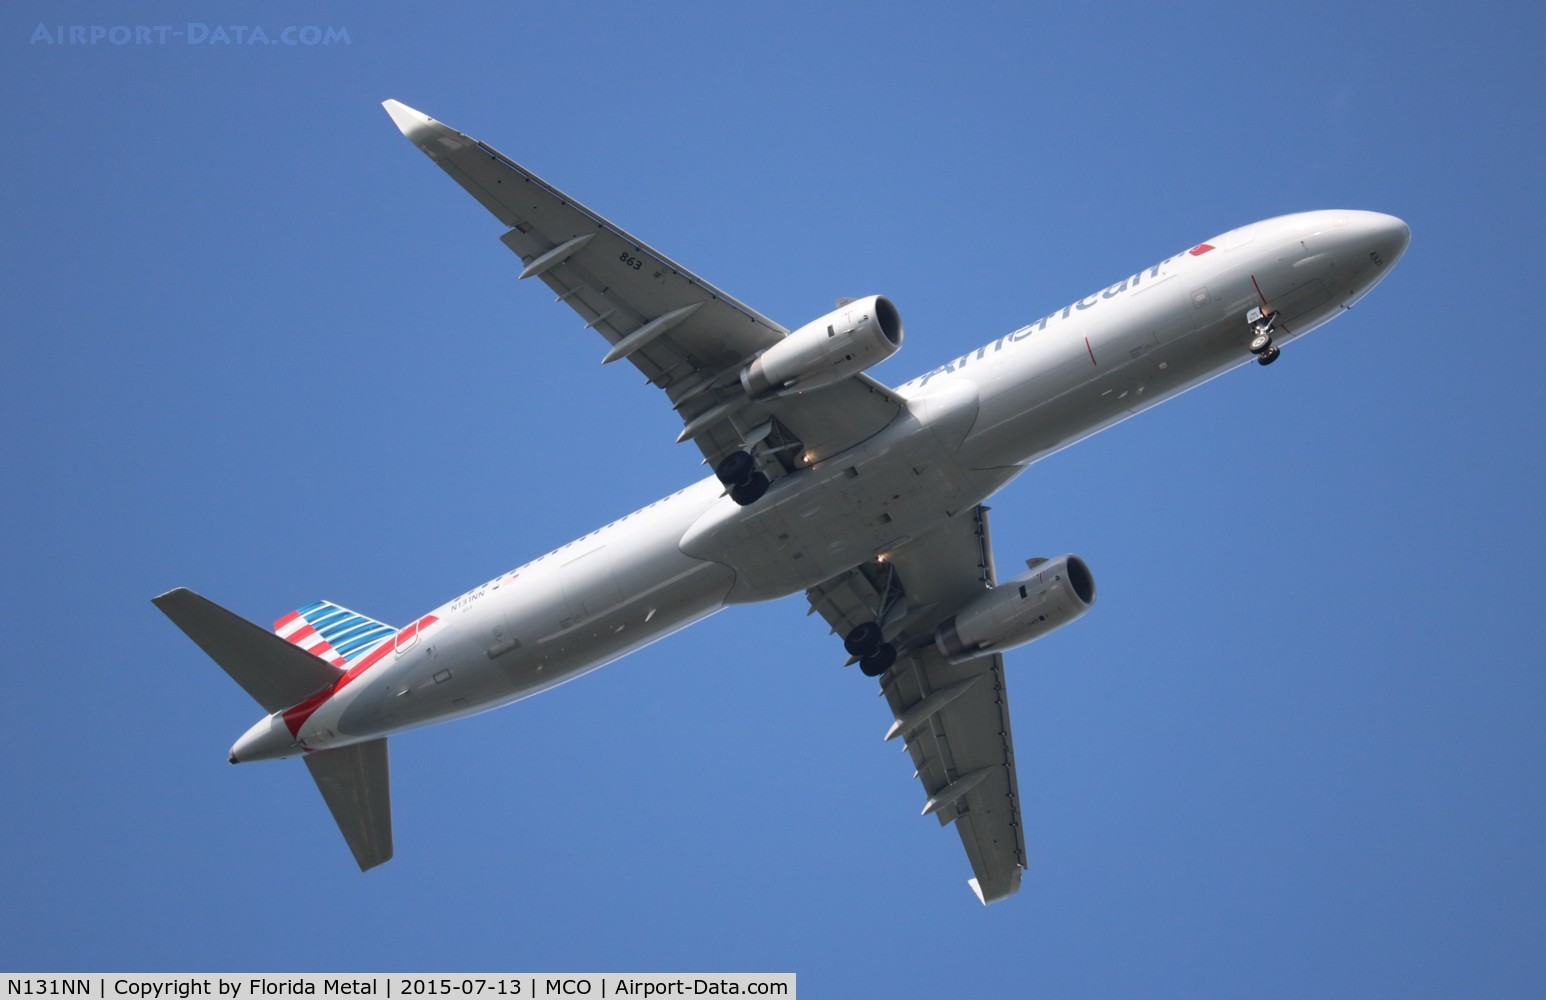 N131NN, 2014 Airbus A321-231 C/N 6472, American